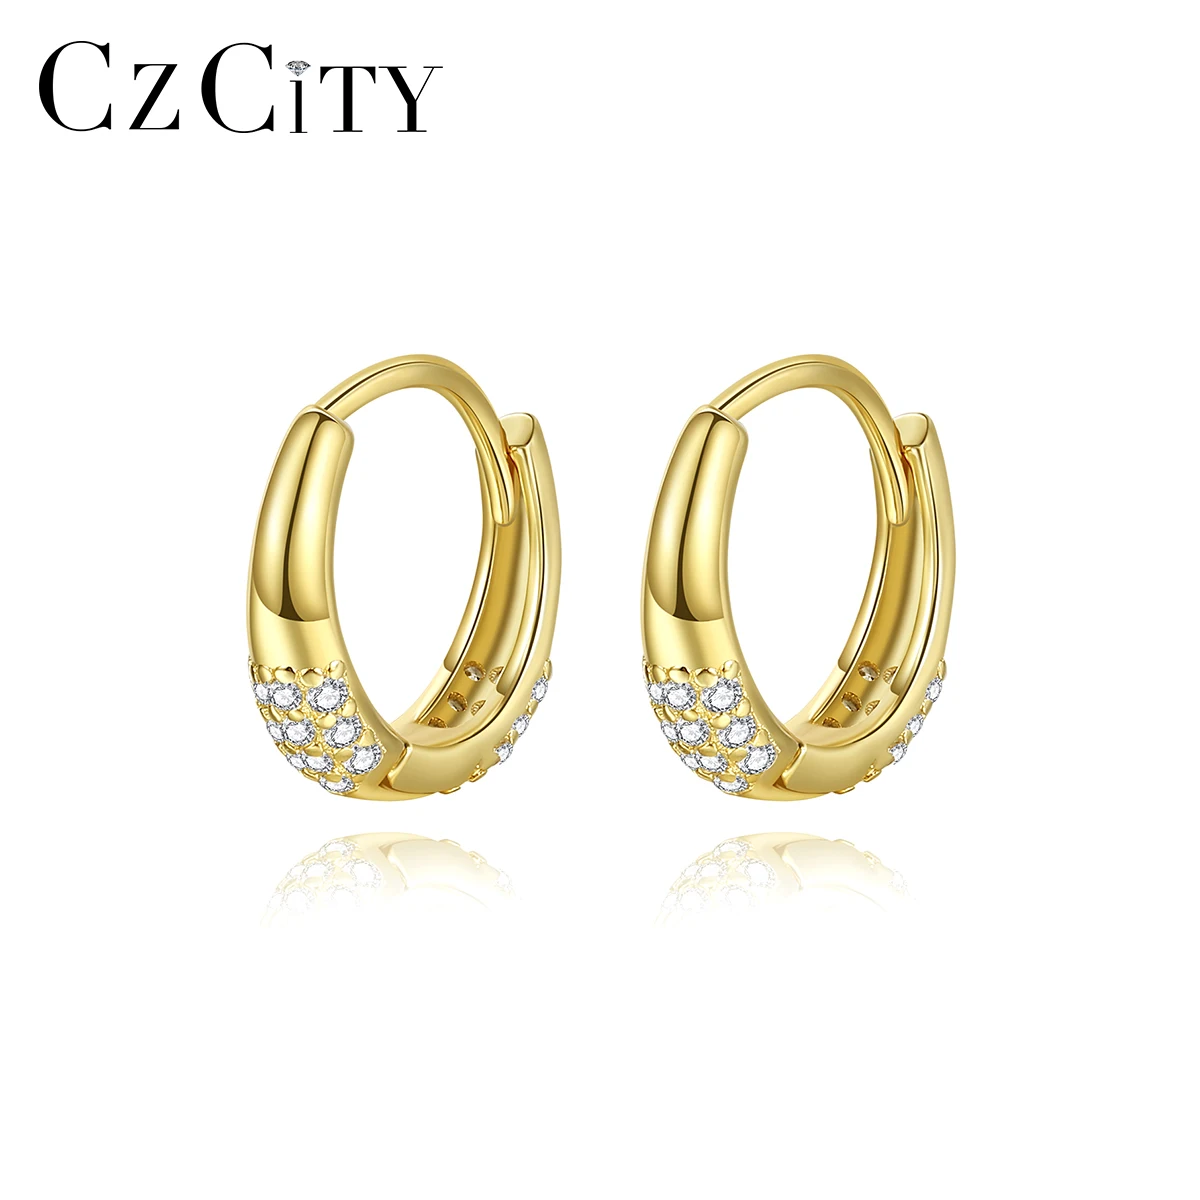 

CZCITY Hot Selling Dainty Women Jewelry Fashion 14K Gold Small Huggie Hoop Silver Earrings 925